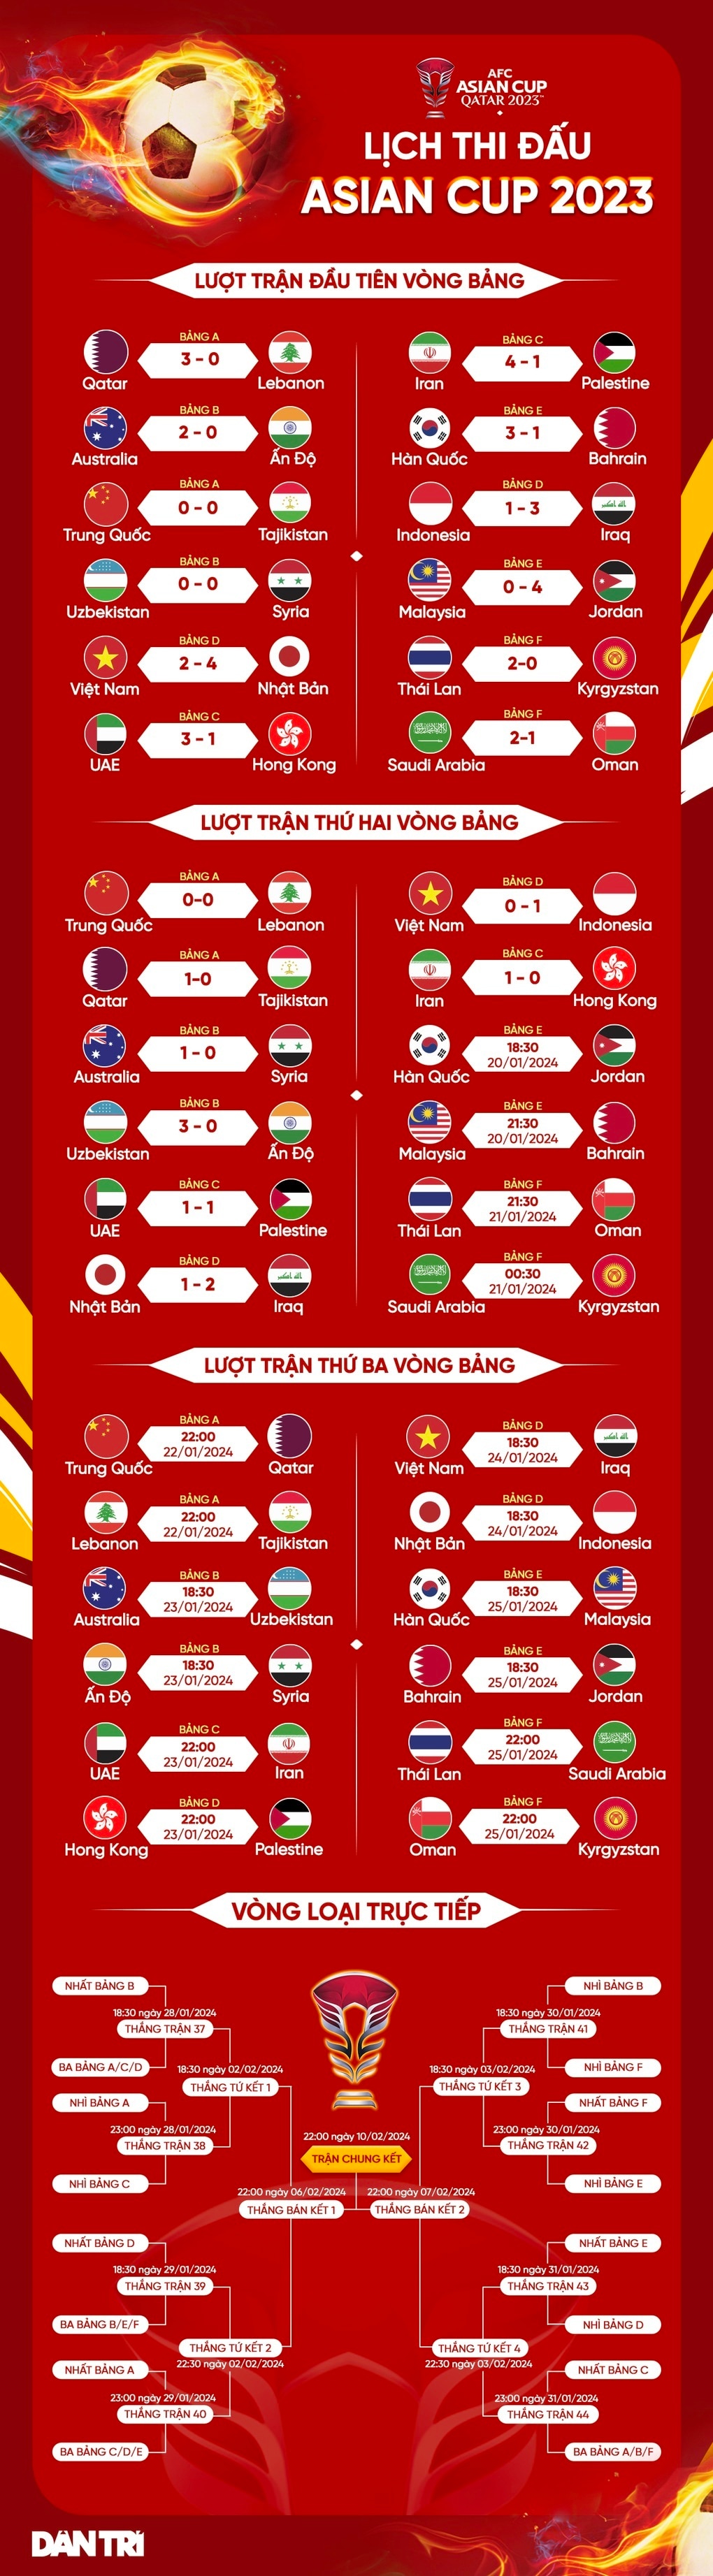 Indonesia được thưởng lớn, nhận lệnh từ Chủ tịch khi thắng tuyển Việt Nam - 3